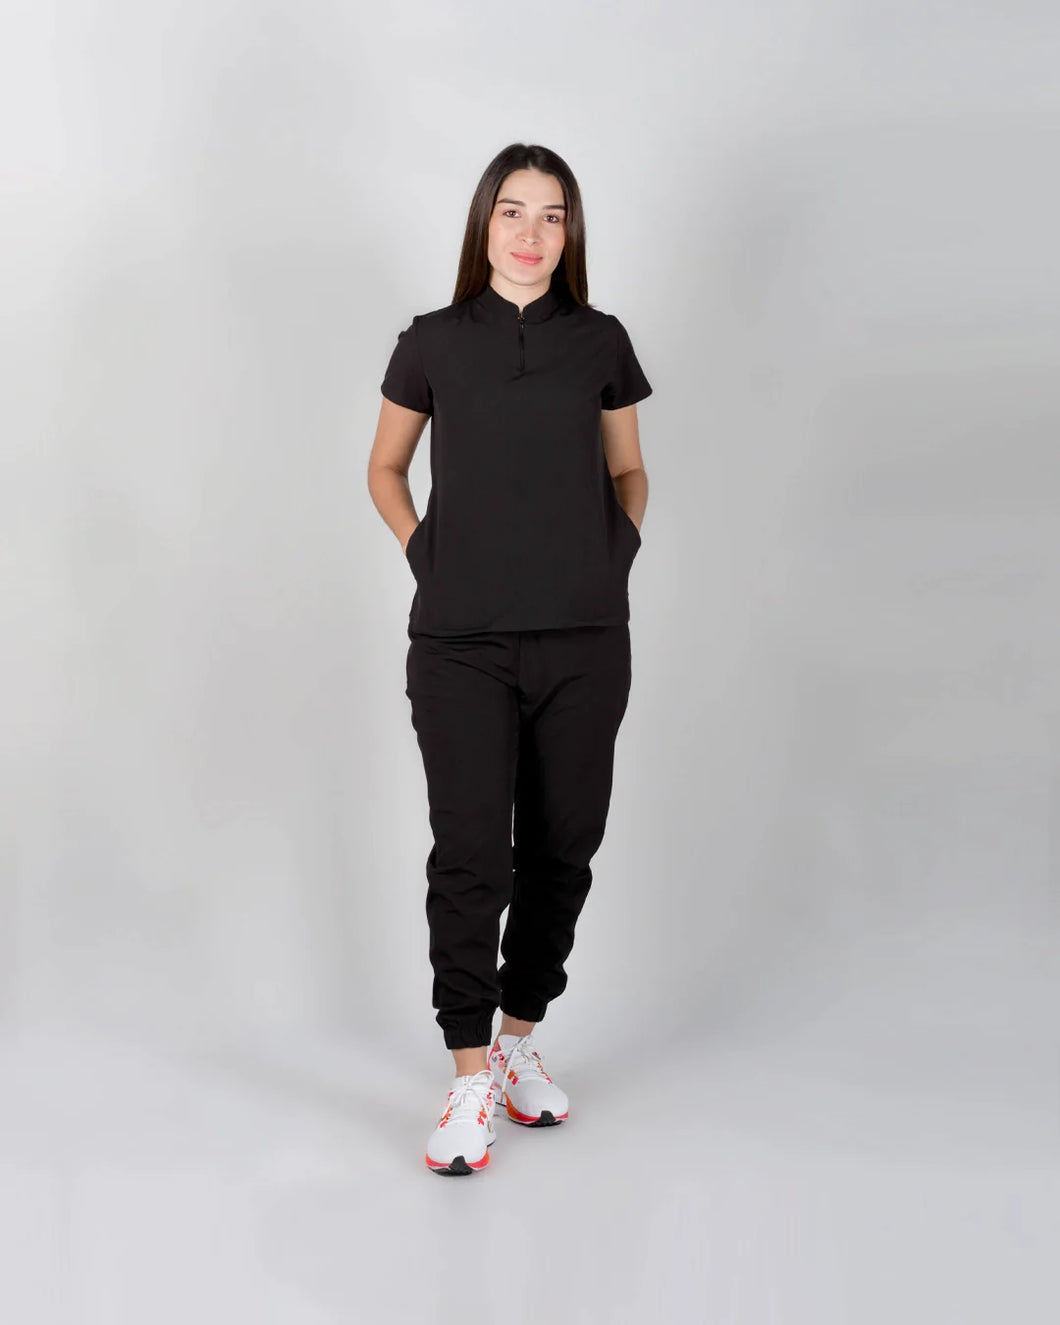 uniformes medicos modernos modelo mao con pantalón jogger de mujer en tela licrada antifluidos color negro